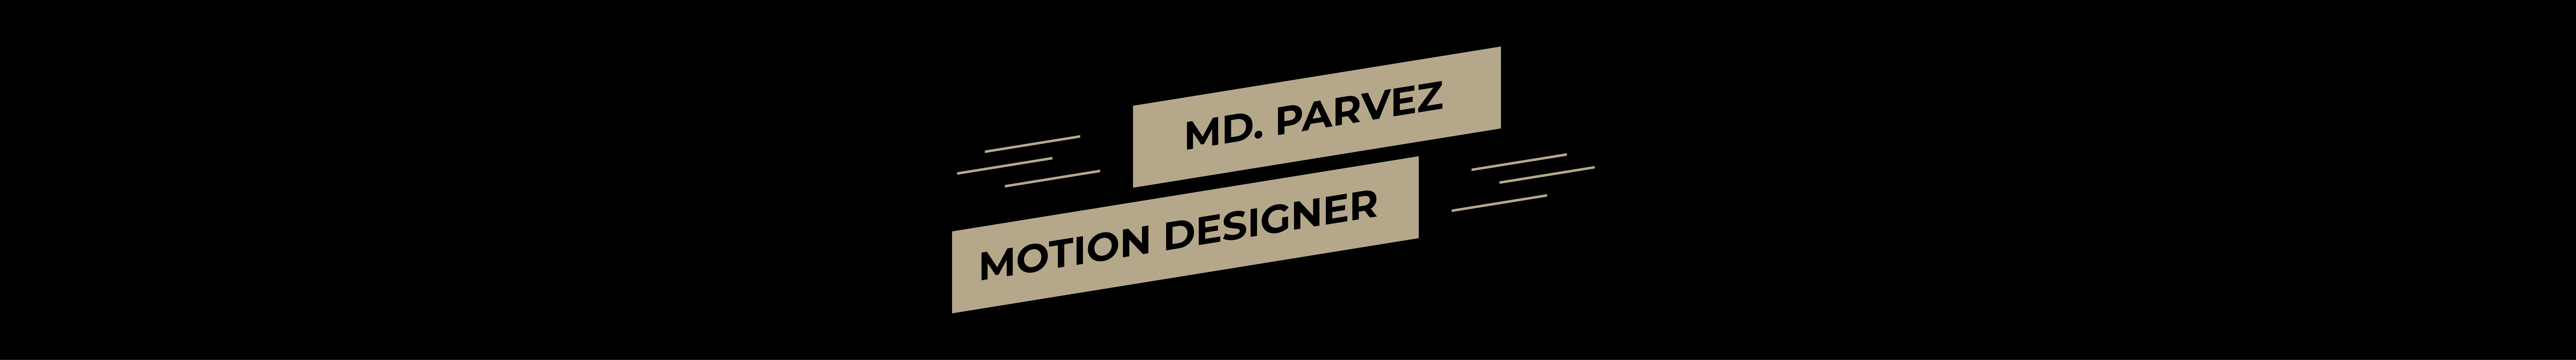 Banner de perfil de Md Parvez